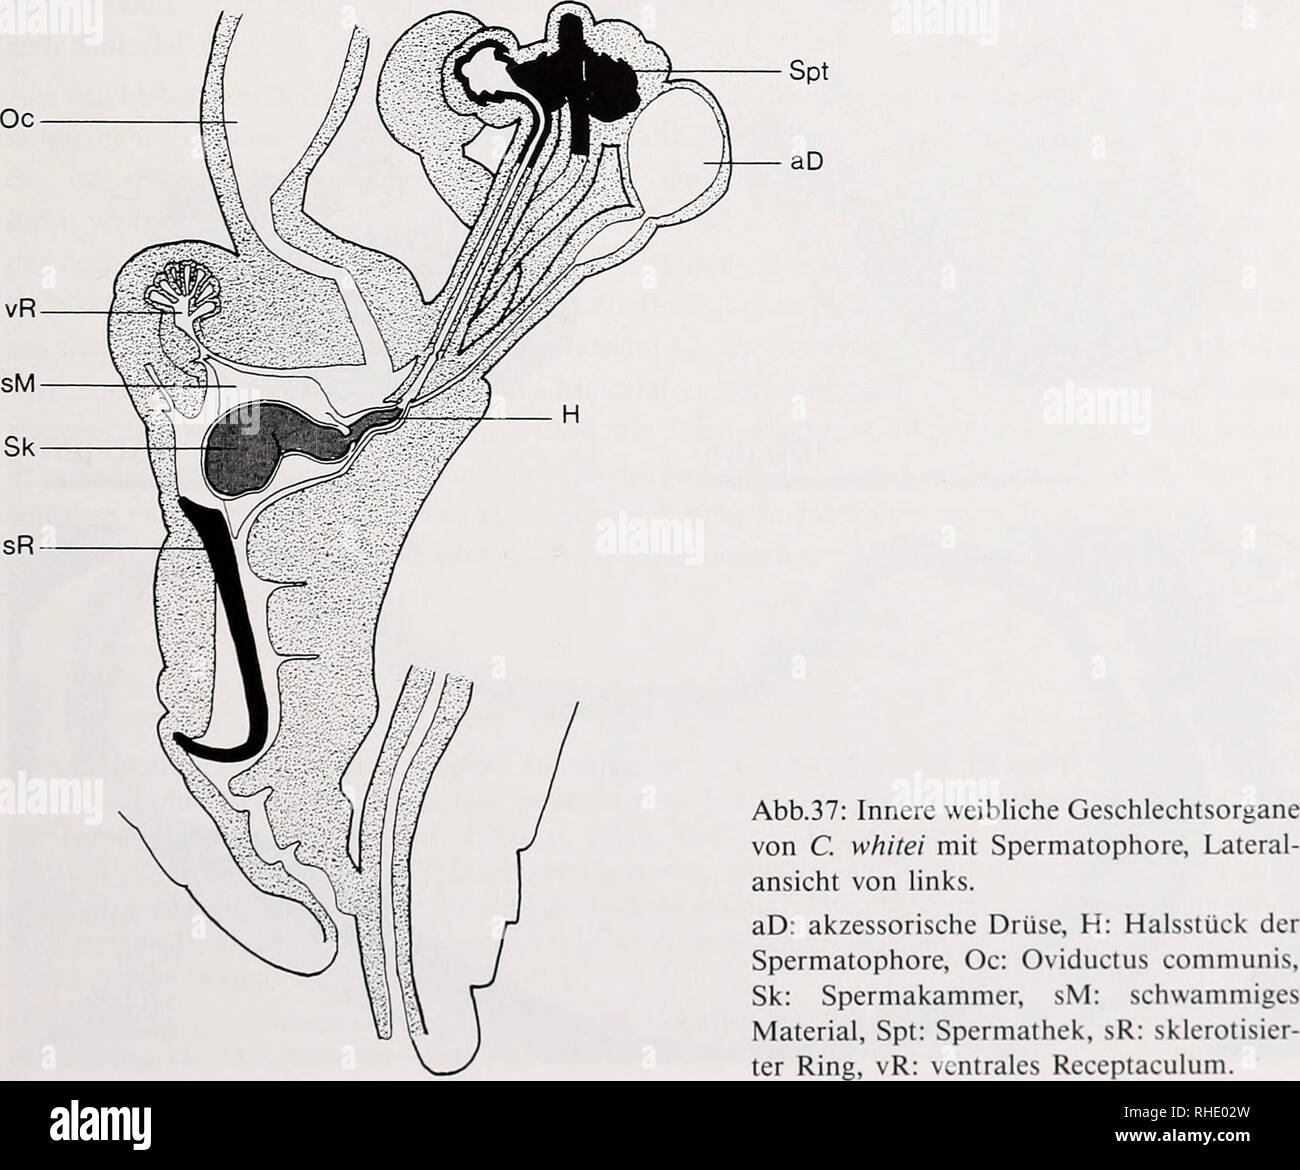 . Bonner zoologische Monographien. Zoology. 69 Granuläre Bestandteile sind auch dem Sperma anderer Dipteren beigemengt (Culicoides melleus (Linley 1981a), Glyptotendipes paripes (Leppla et al. 1975), Simulium salopiense (Davies 1965), Drosophila melanogaster (Nonidez 1920), Aedes aegypti (Spielman 1964)). Ihre Funktion ist noch nicht geklärt. Möglicherweise enthalten die elektronendichten Tröpfchen in der Spermatophore von C. whitei eine Art „Proviant&quot; für die wochenlange Speicherung der Spermatozoen im Weib- chen, oder sie tragen zur Ernährnung des Weibchens bei (Thornhill 1976b). Bildun Stock Photo